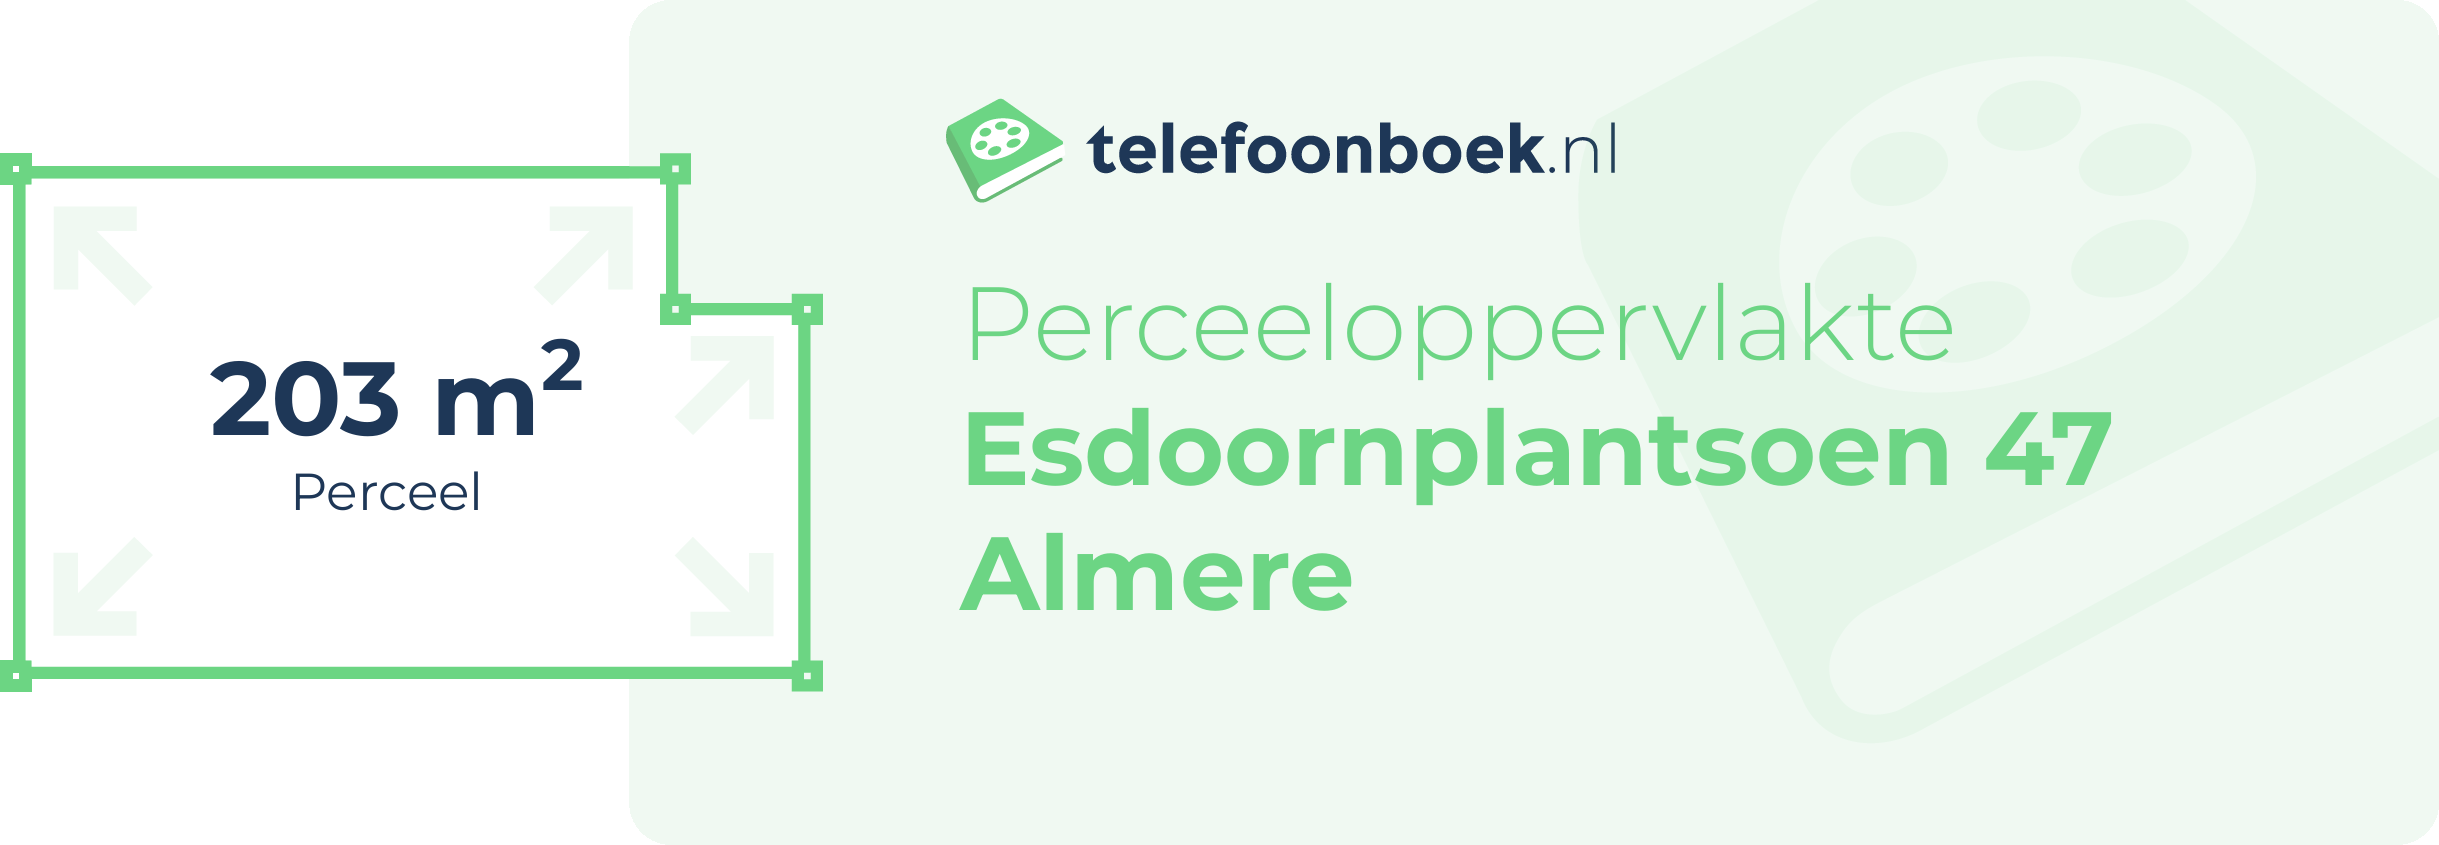 Perceeloppervlakte Esdoornplantsoen 47 Almere